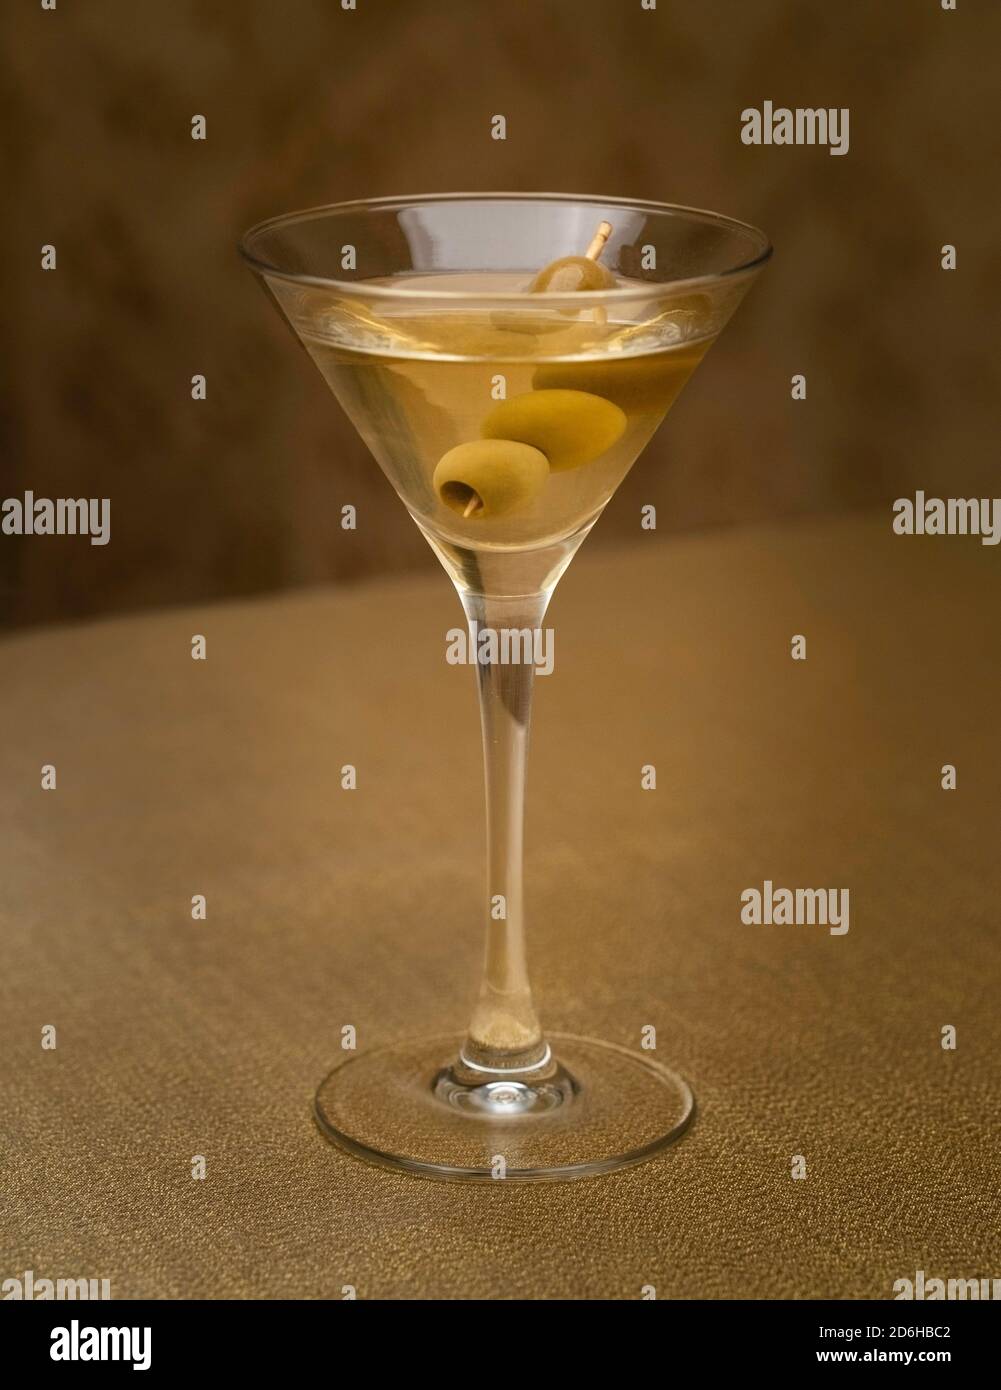 martini vodka con aceitunas en el interior sobre tejido dorado Foto de stock